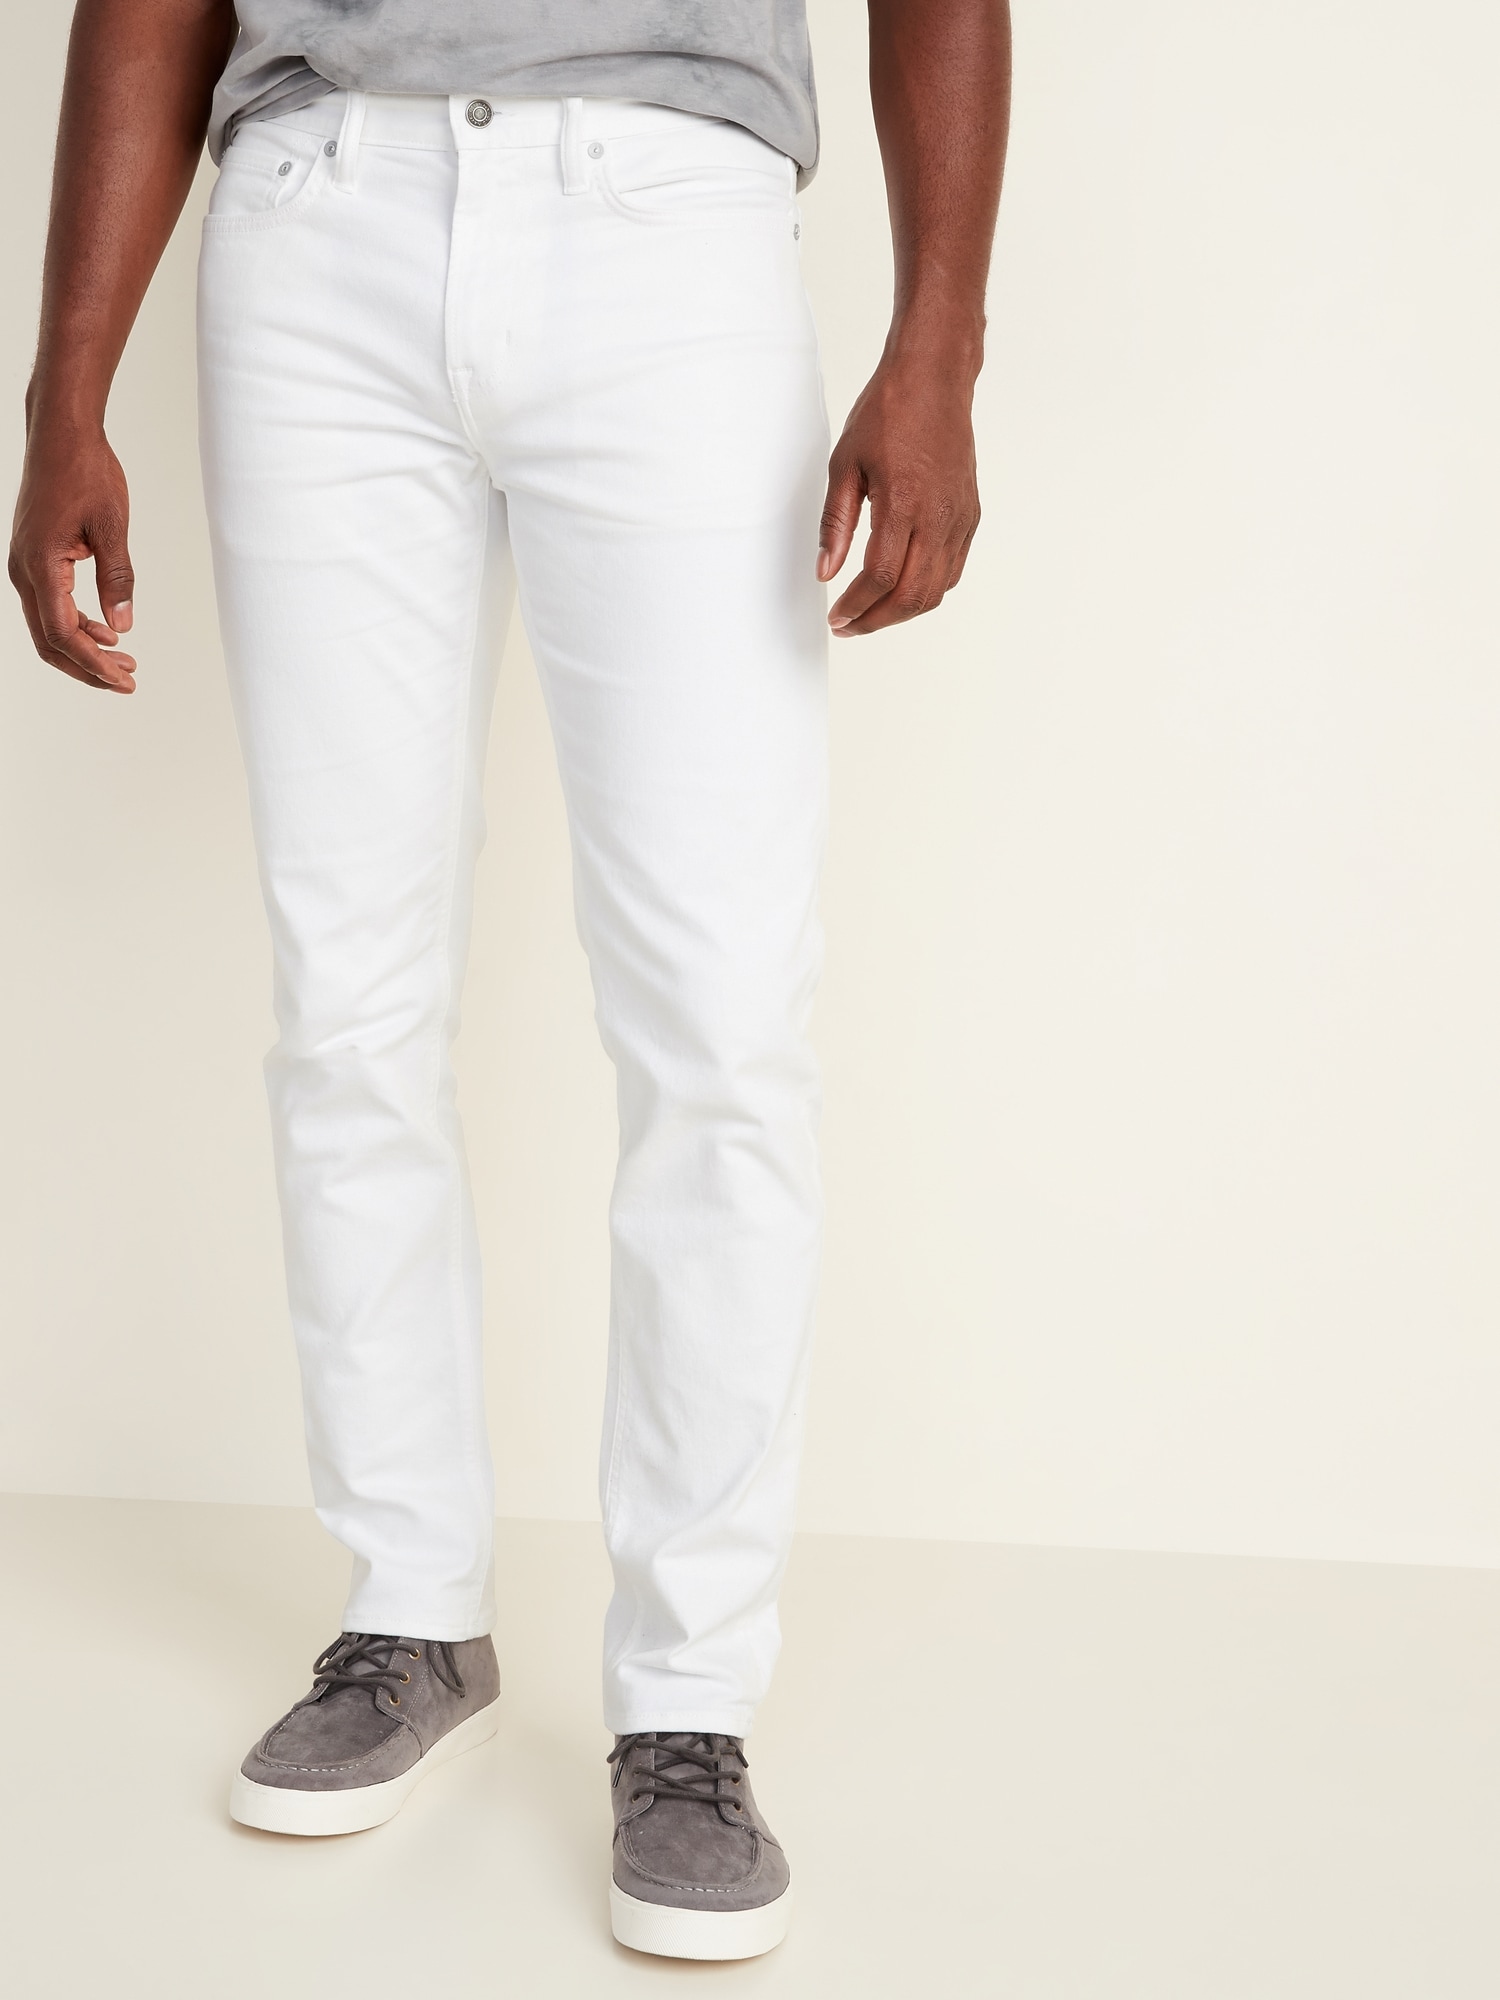 white jeans for men near me